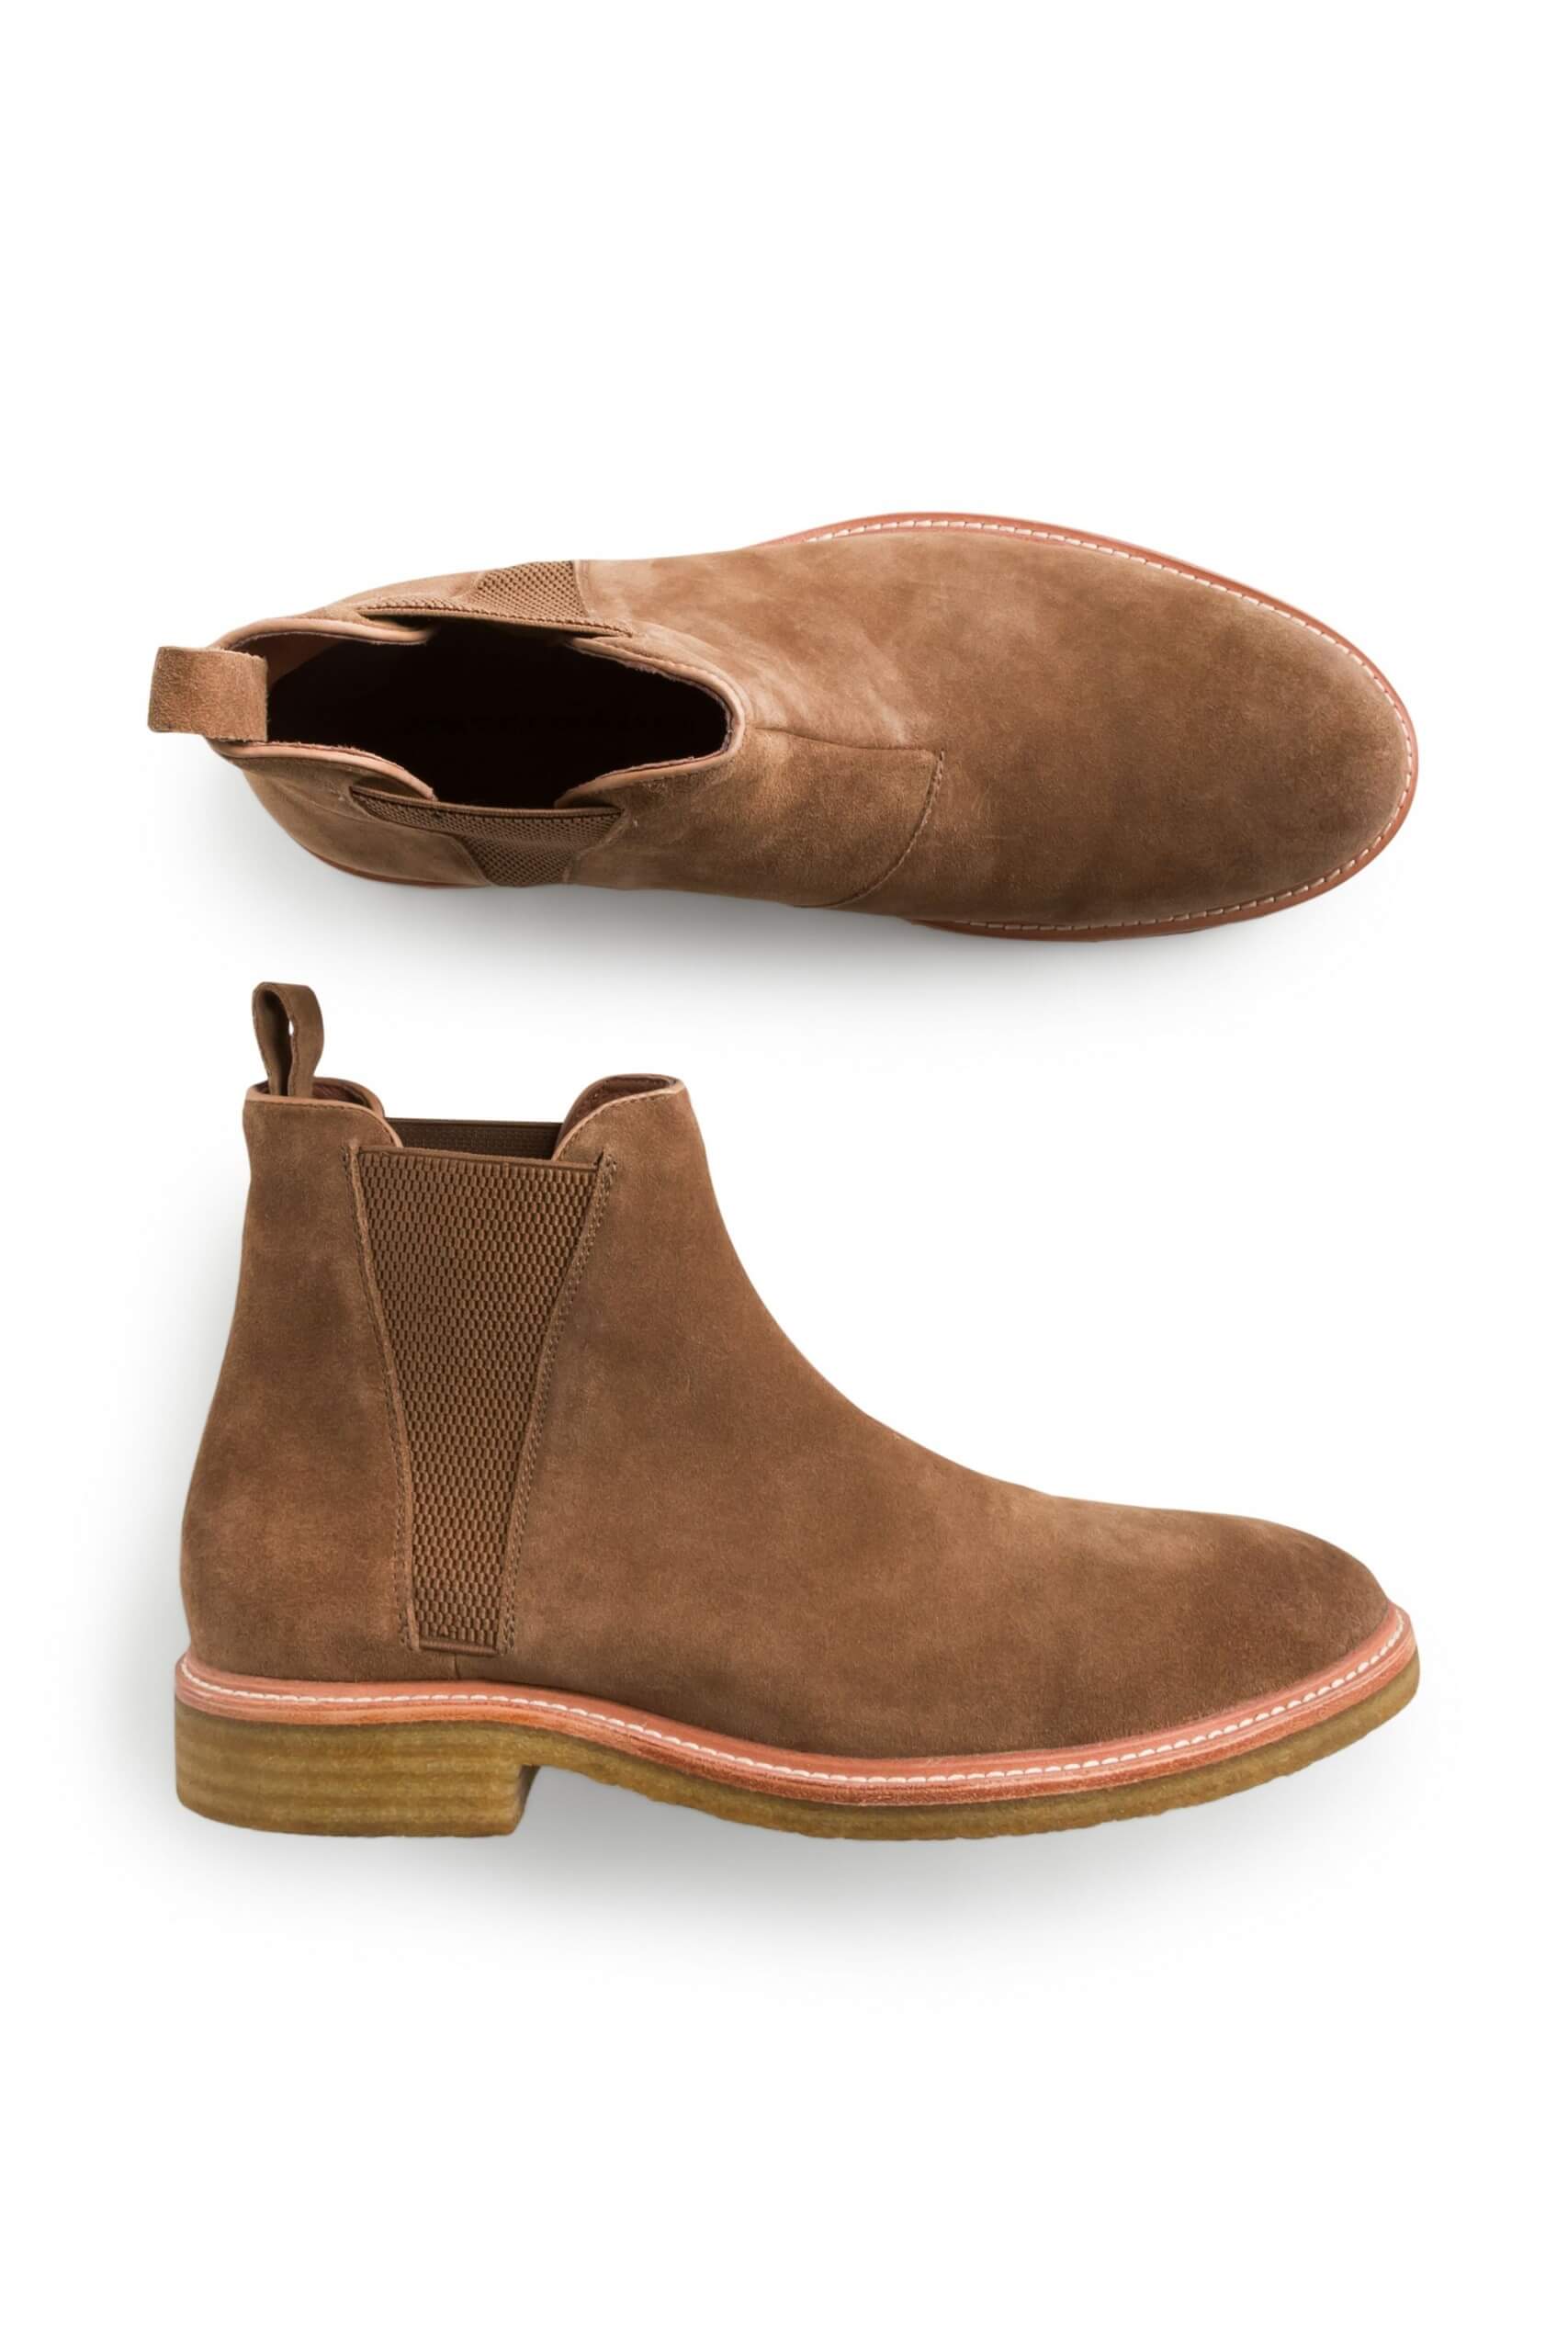 LV Flex Chelsea Boot - Men - Shoes